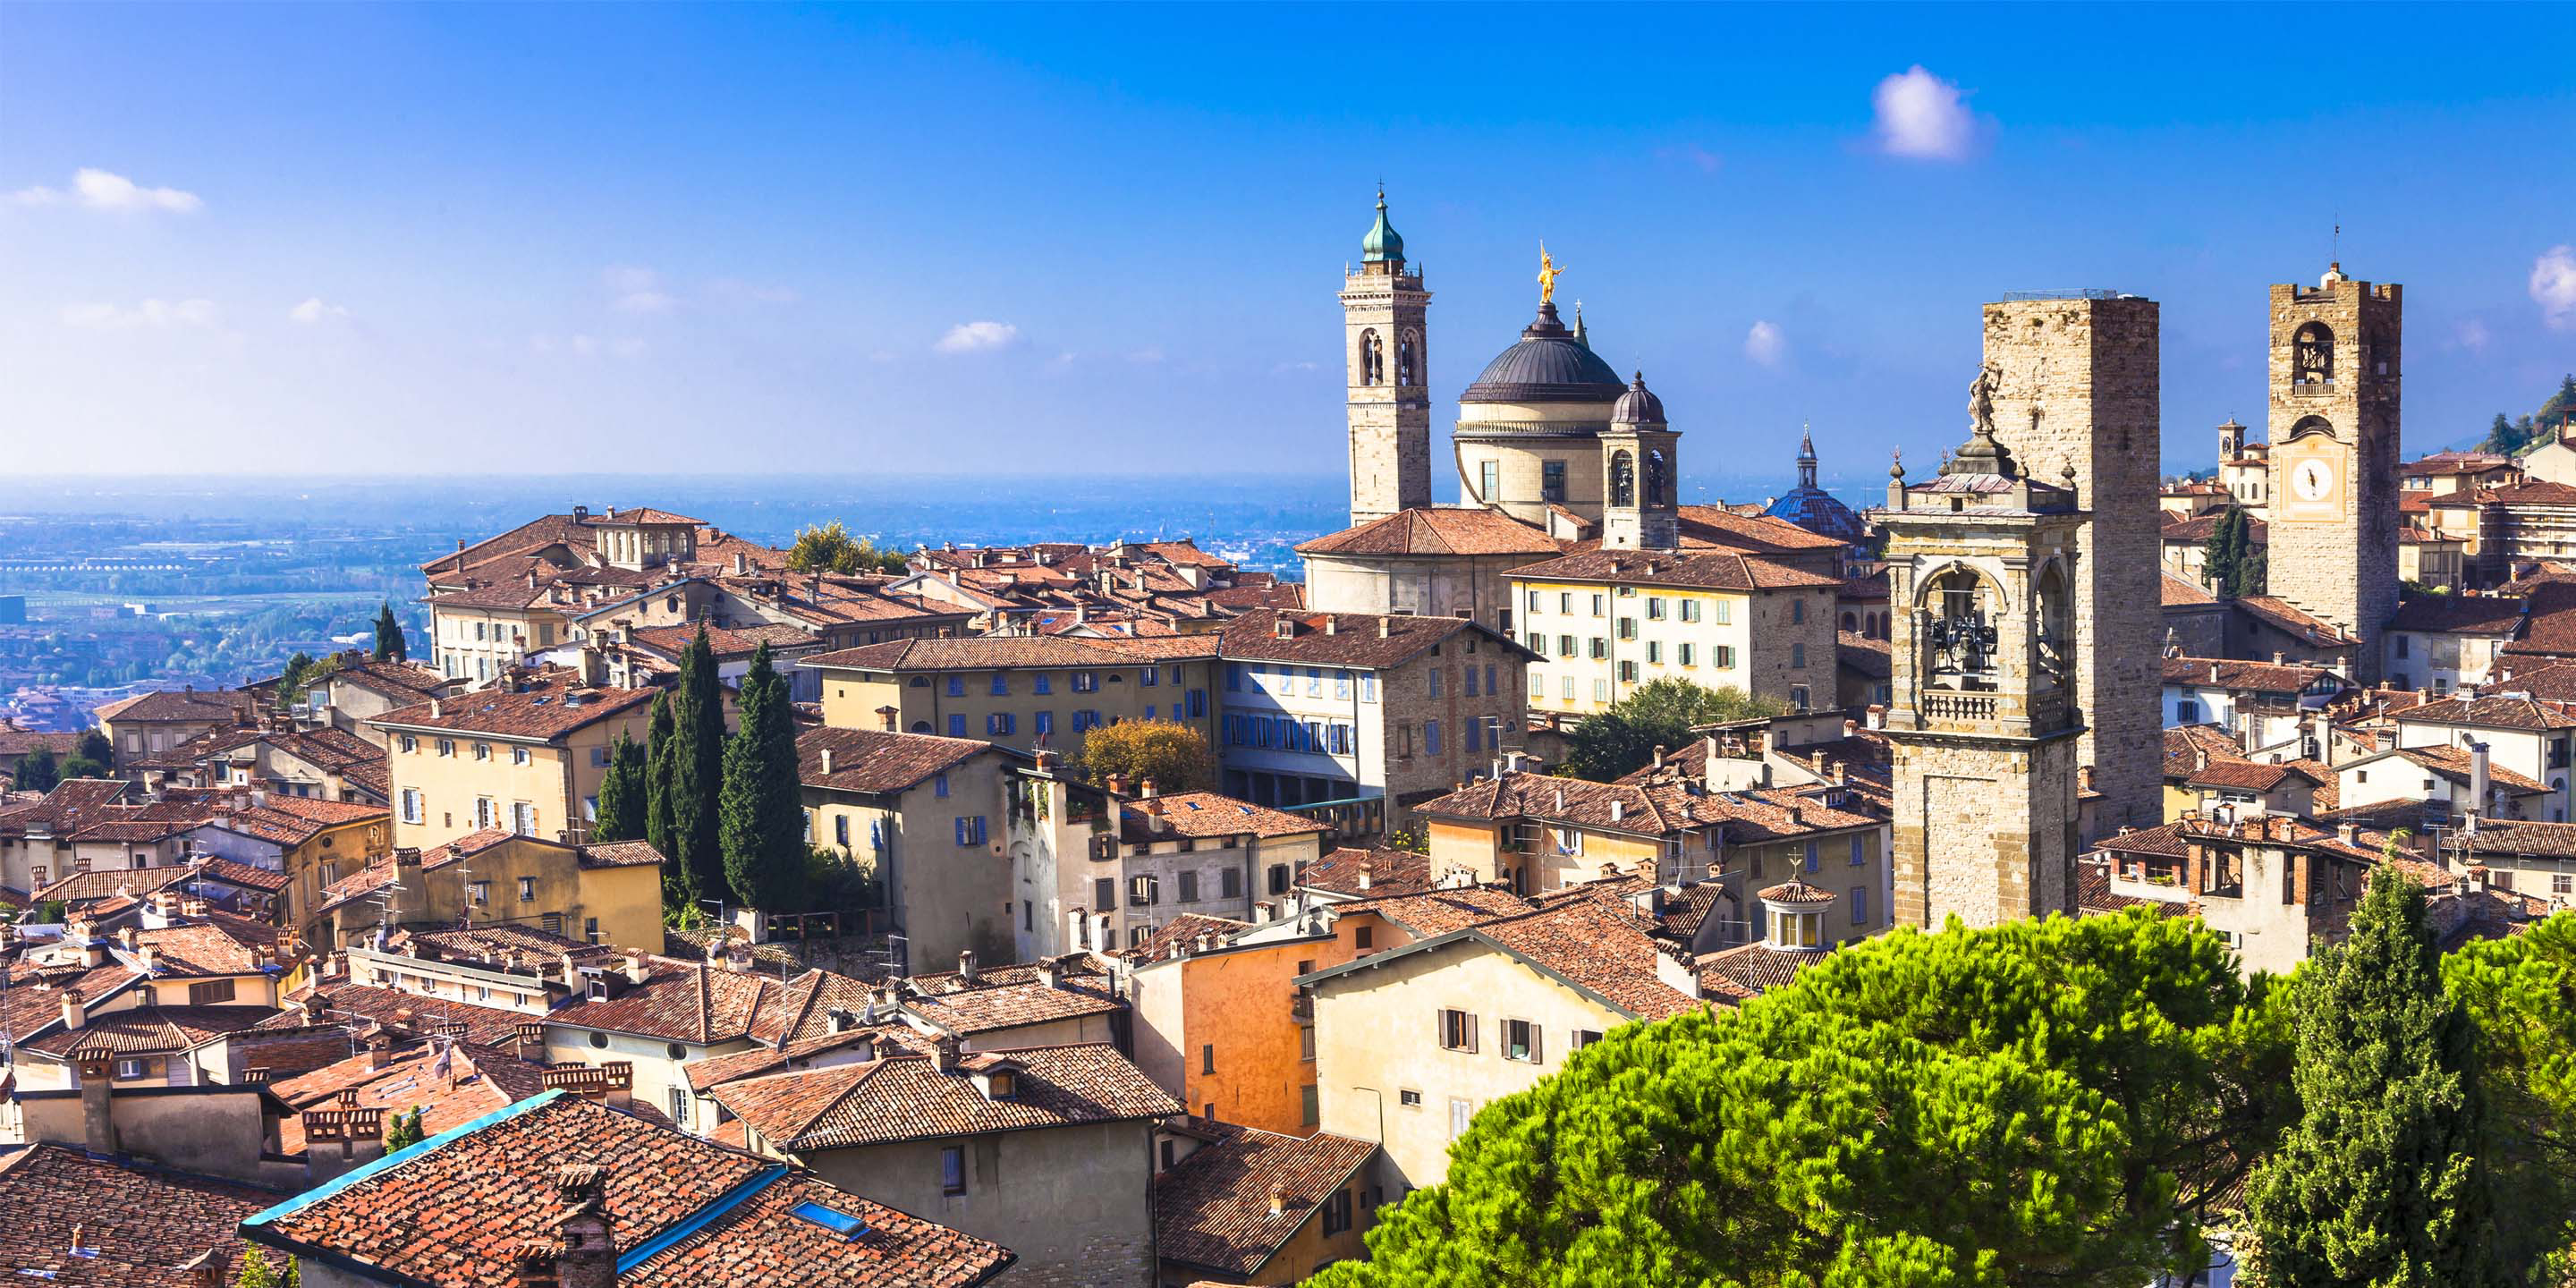 Una vista delle città di Bergamo dall'alto